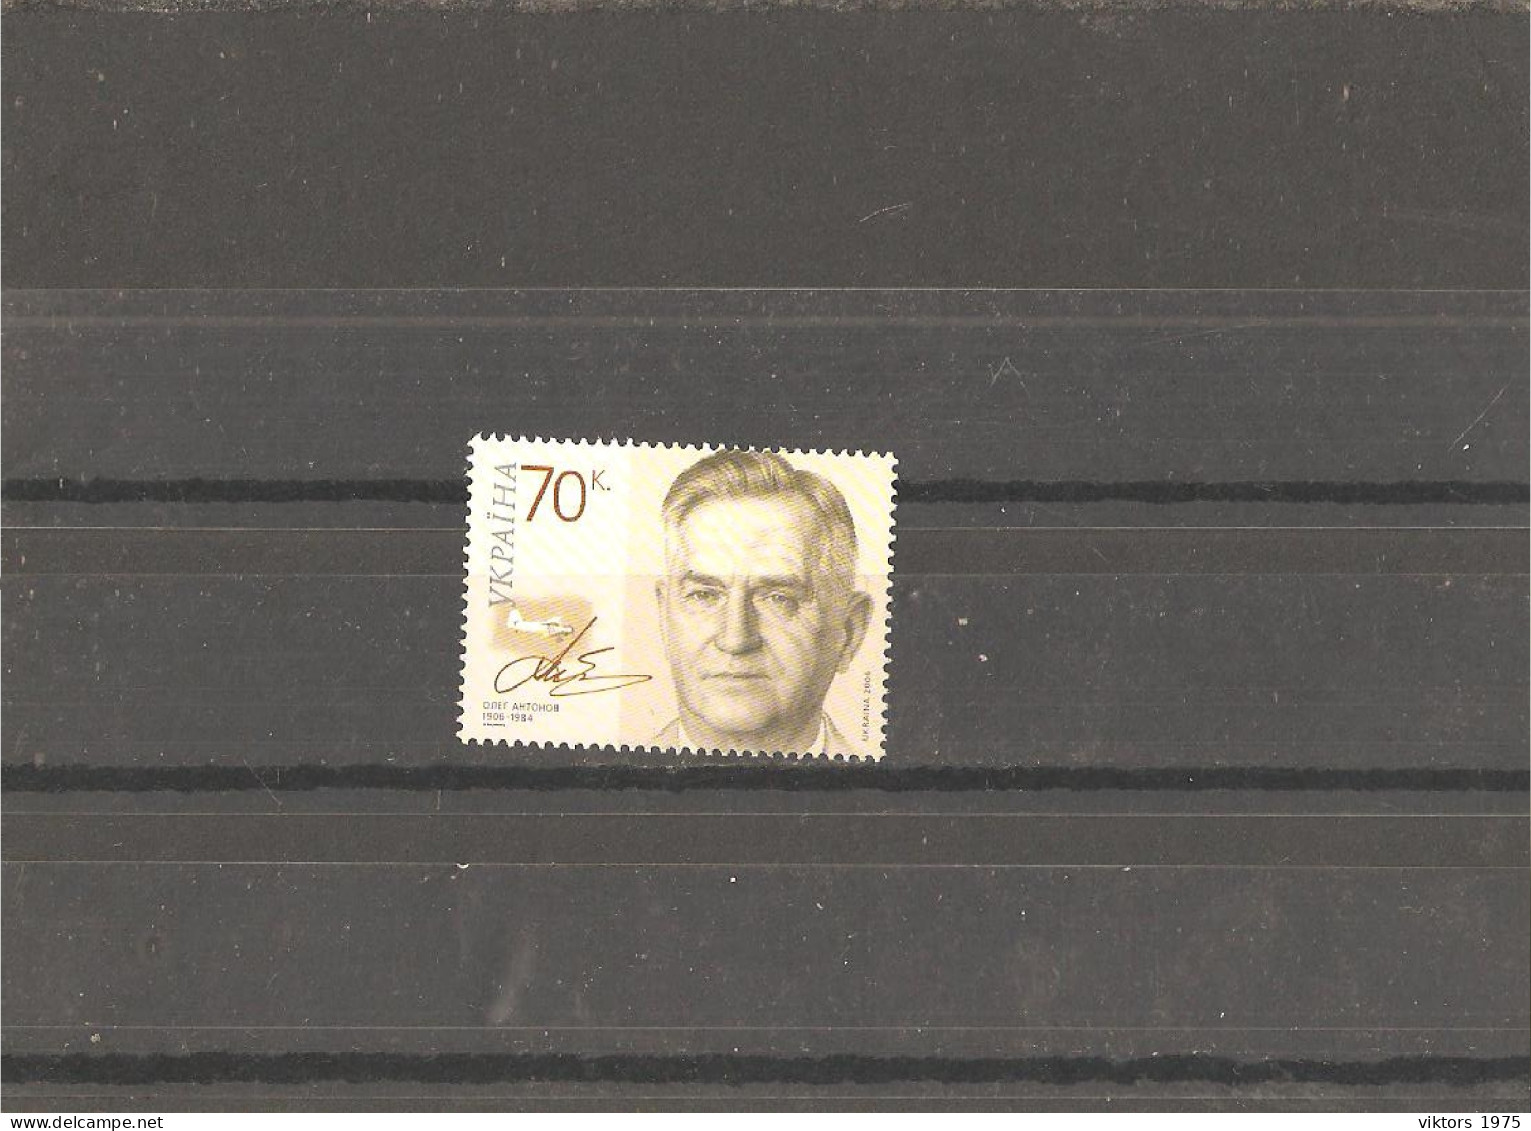 MNH Stamp Nr.768 In MICHEL Catalog - Ukraine